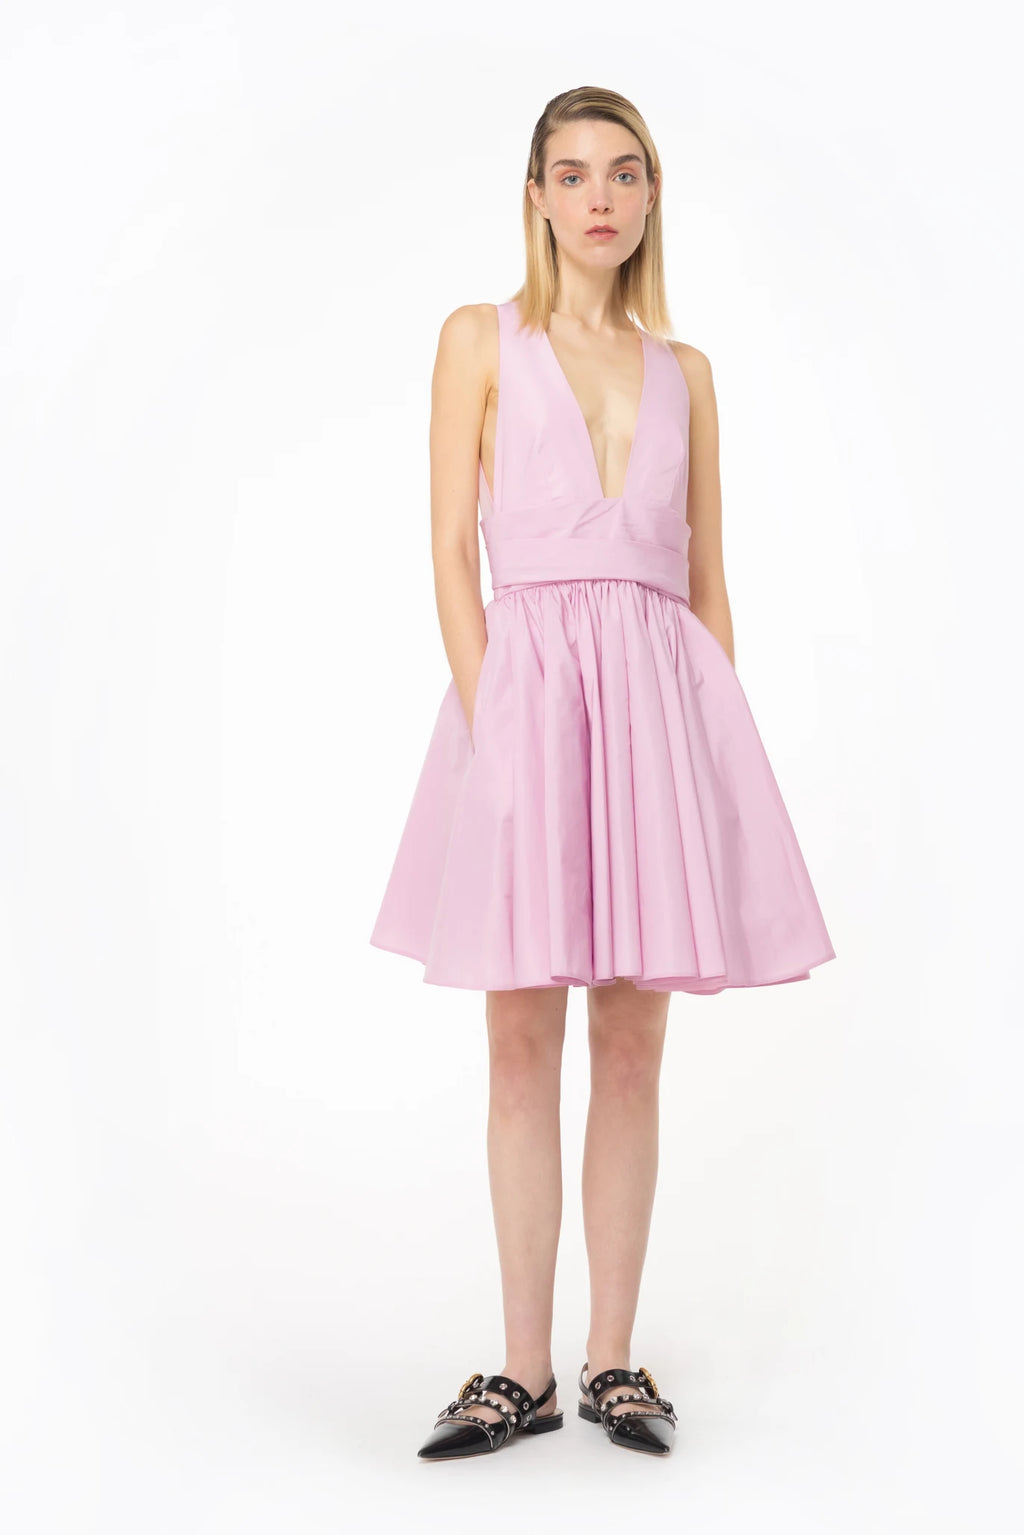 Pink short sleeveless dress